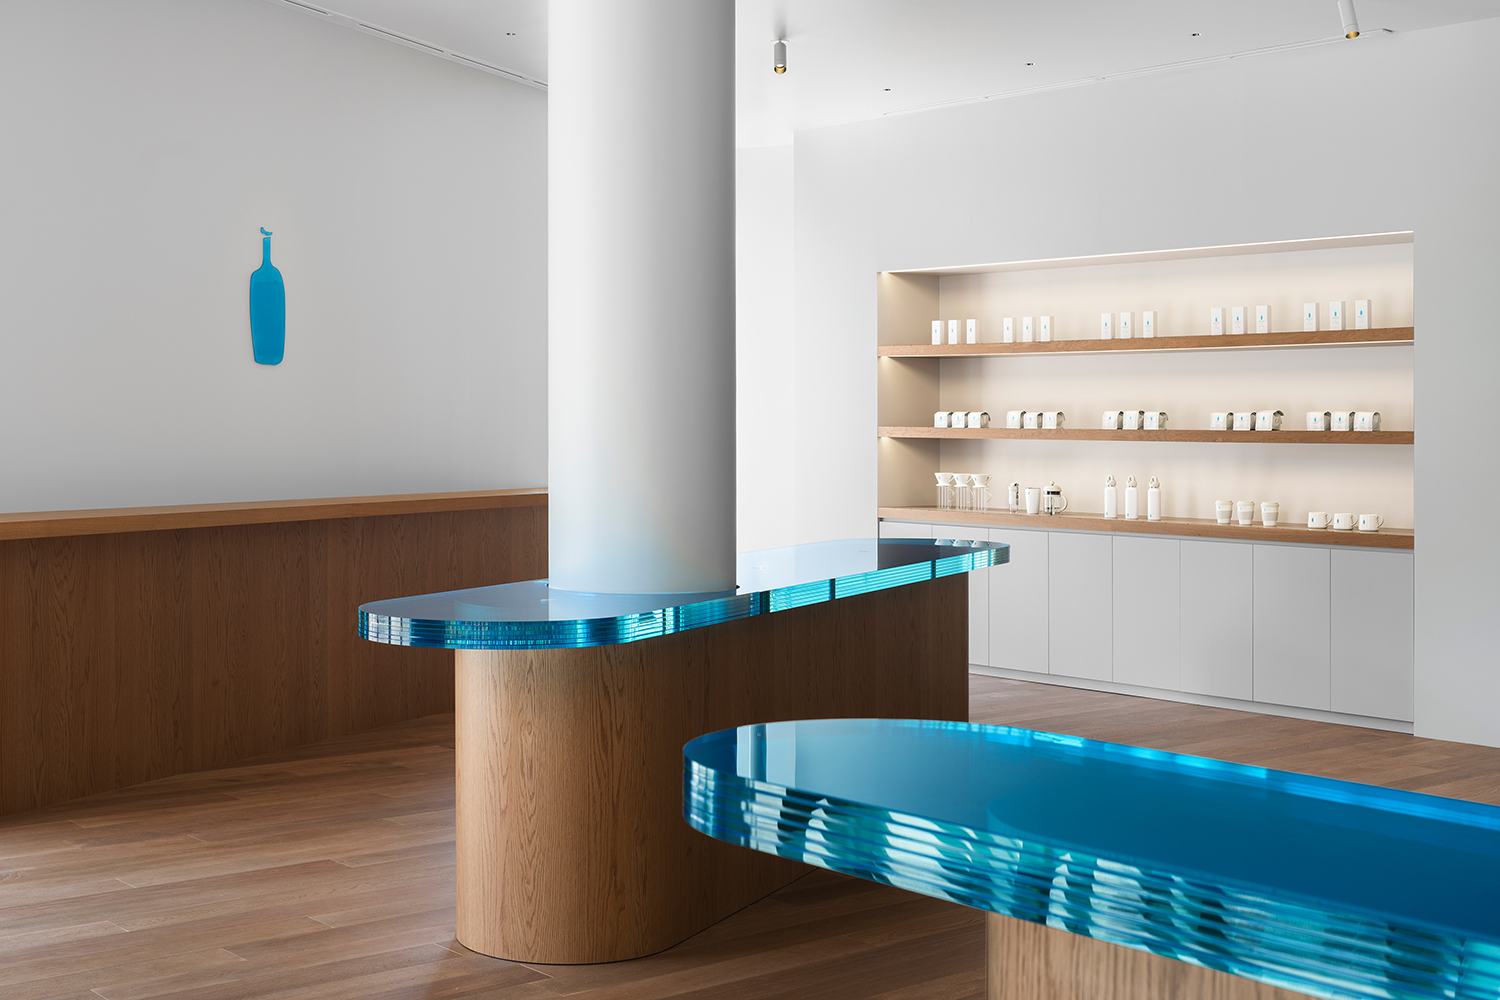 水泥漆外立面、蓝紫色静谧空间、金属操作台磨砂玻璃、,蓝色树脂台面、柜内线型灯、玻璃球组合吊灯、,日本灯光设计|大阪极简主义蓝瓶咖啡厅照明设计案例